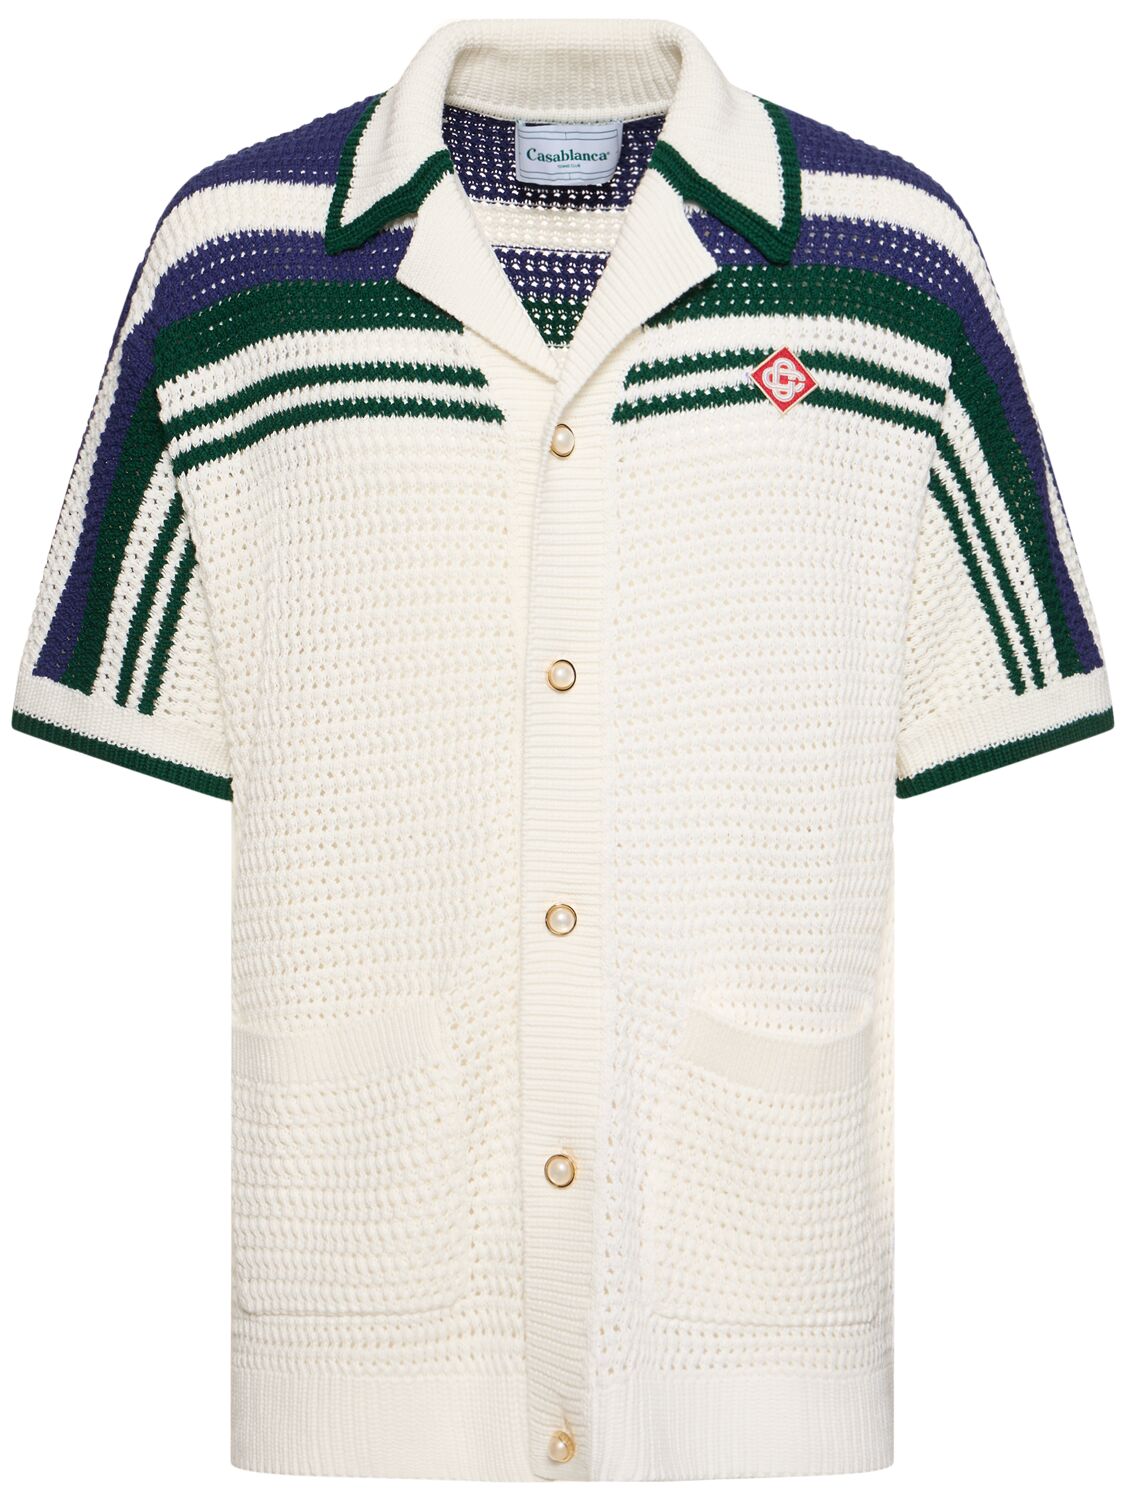 Tennis Cotton Crochet S/s Shirt